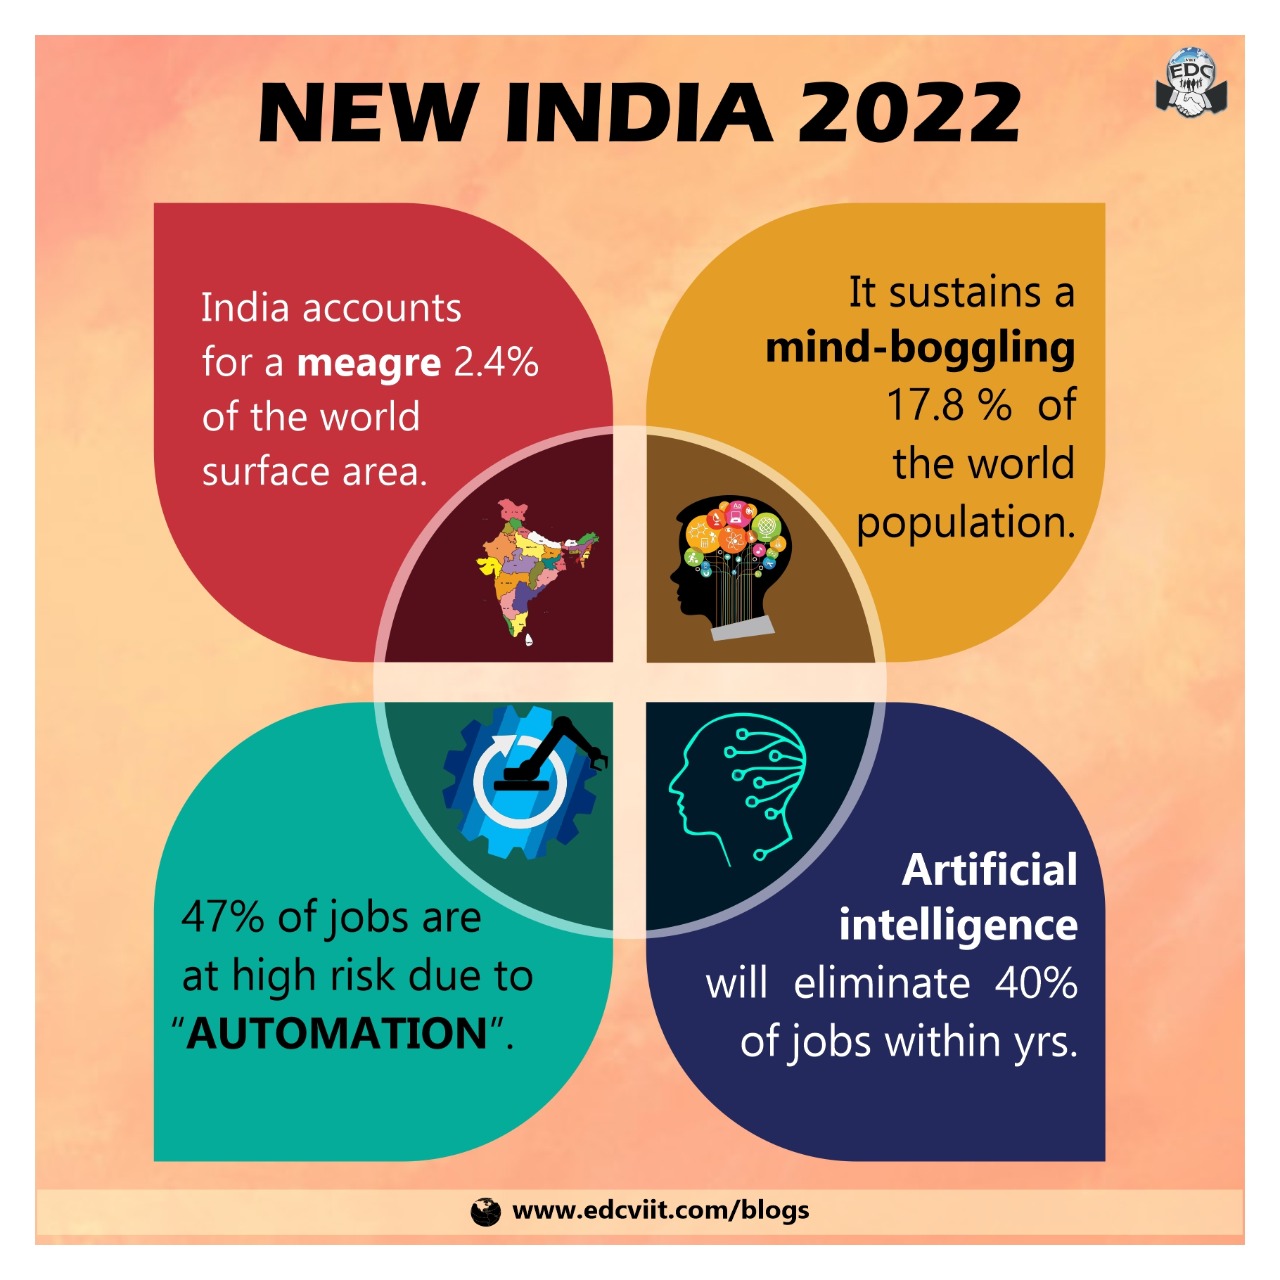 New India 2022